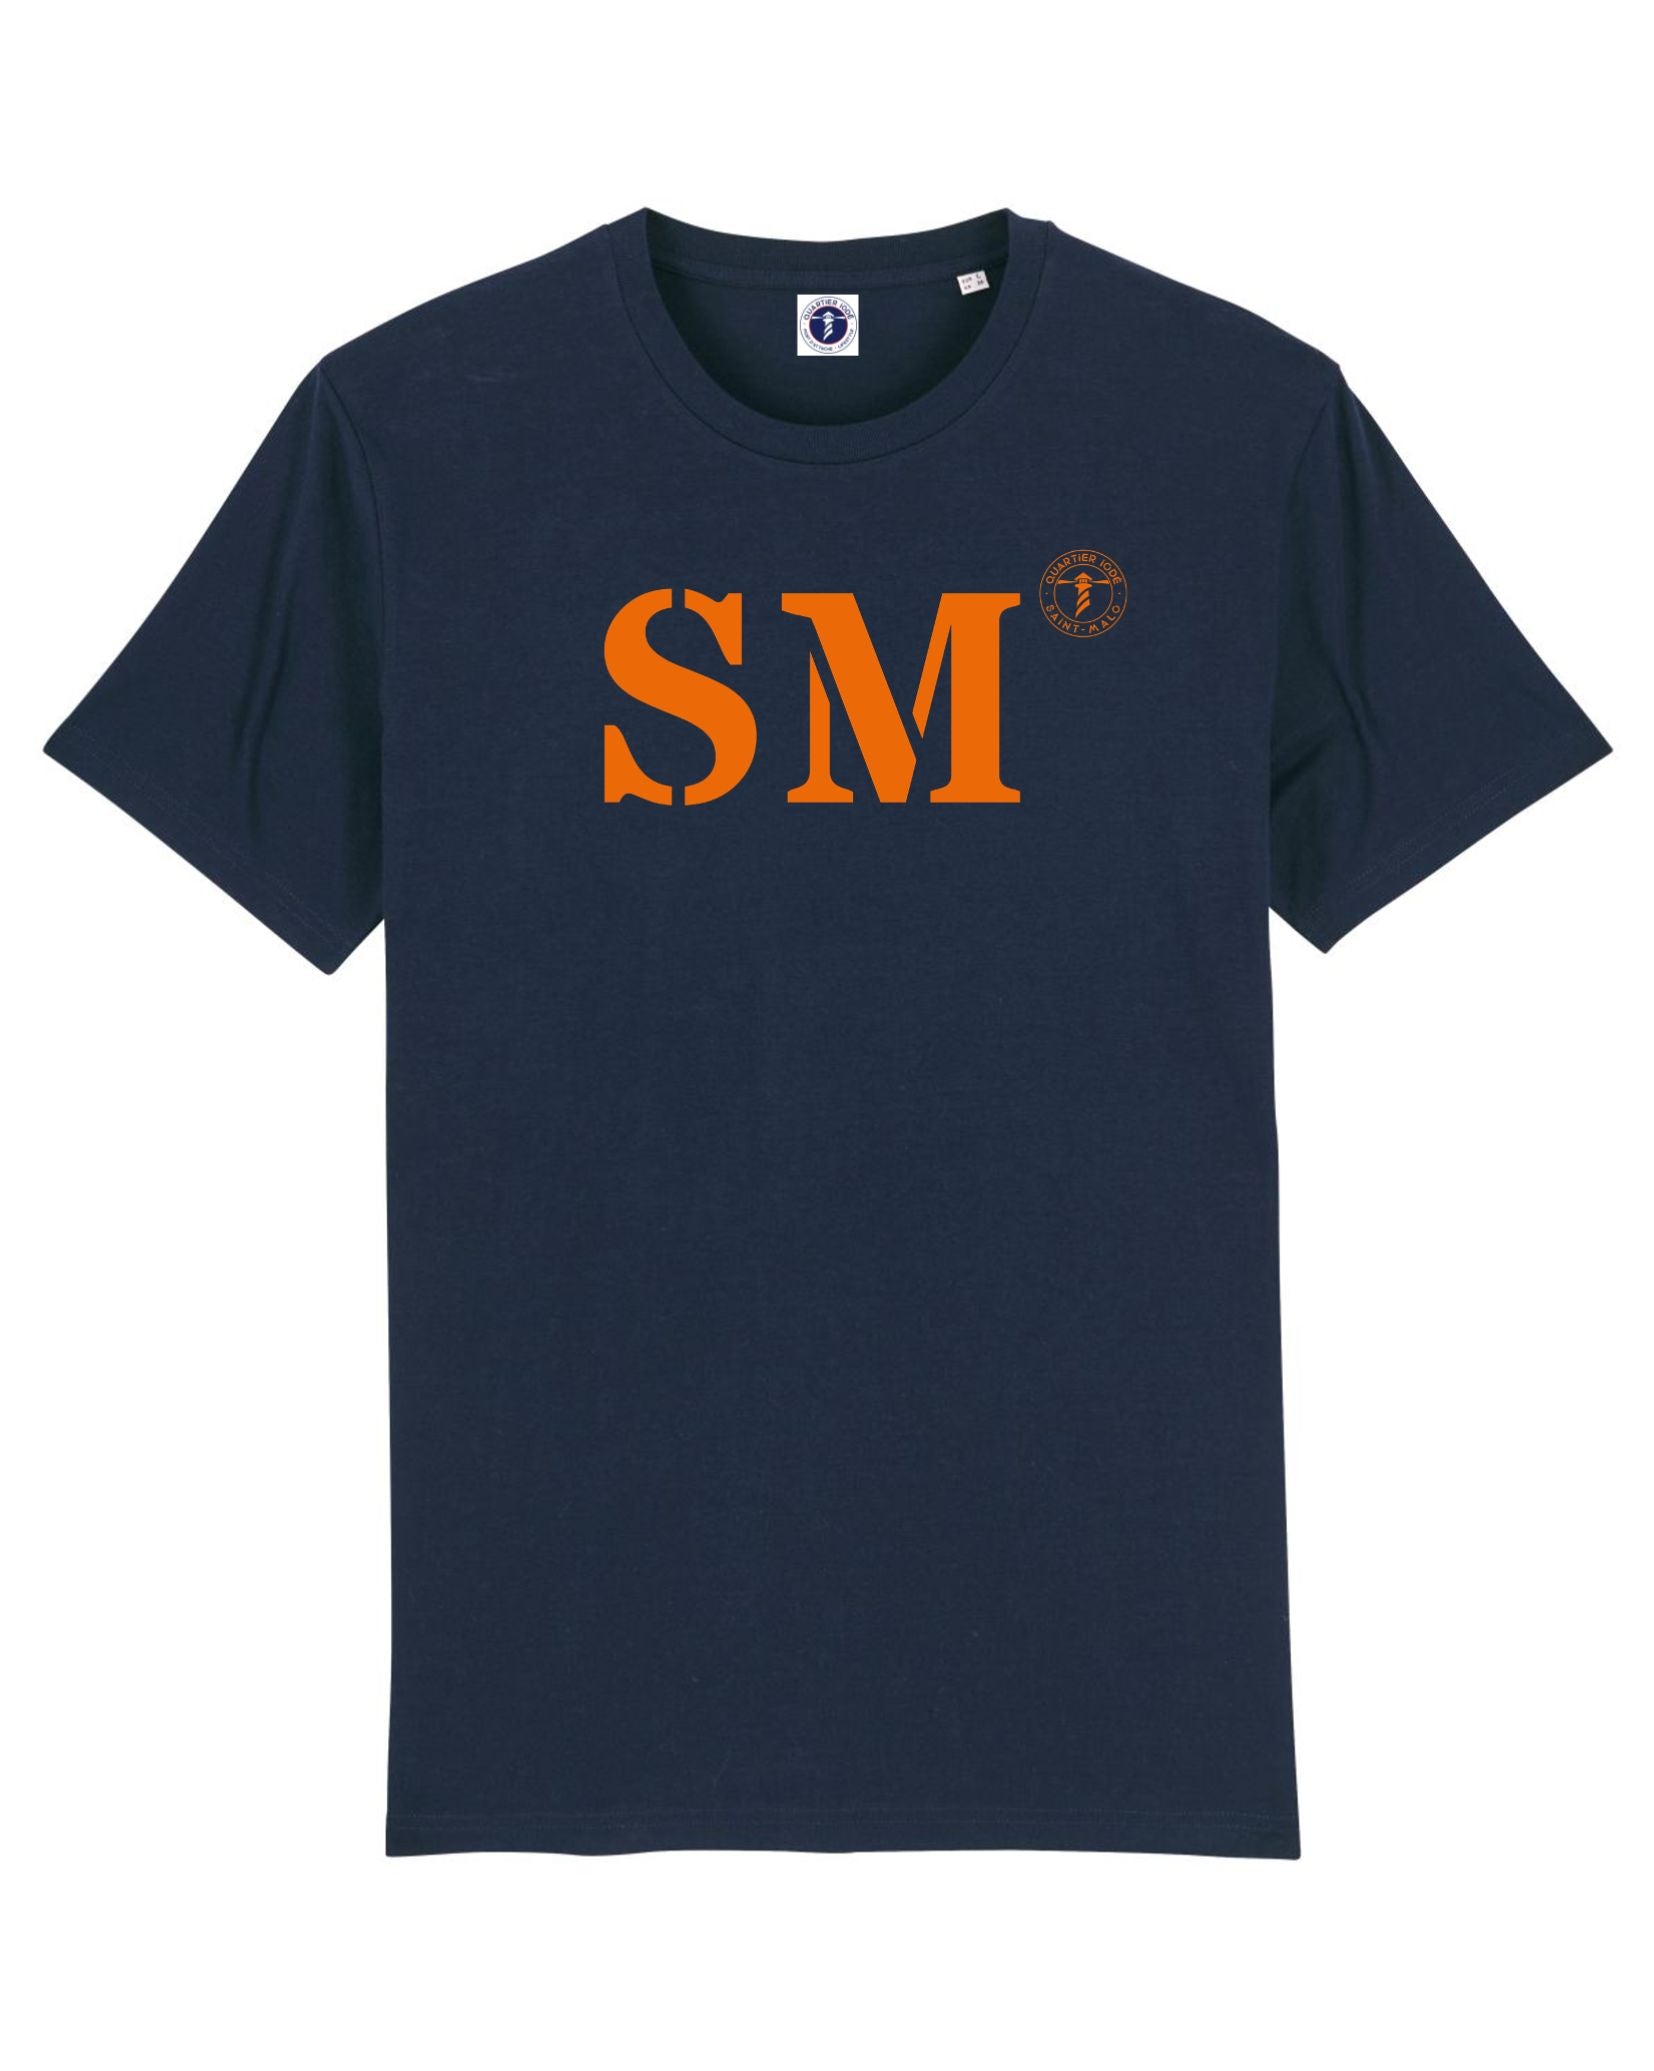 Tshirt navy, bleu marine avec initiale SM pour Saint Malo en Orange. Design chic et moderne pour ce Tshirt unisexe de la marque bretonne Quartier Iode. 